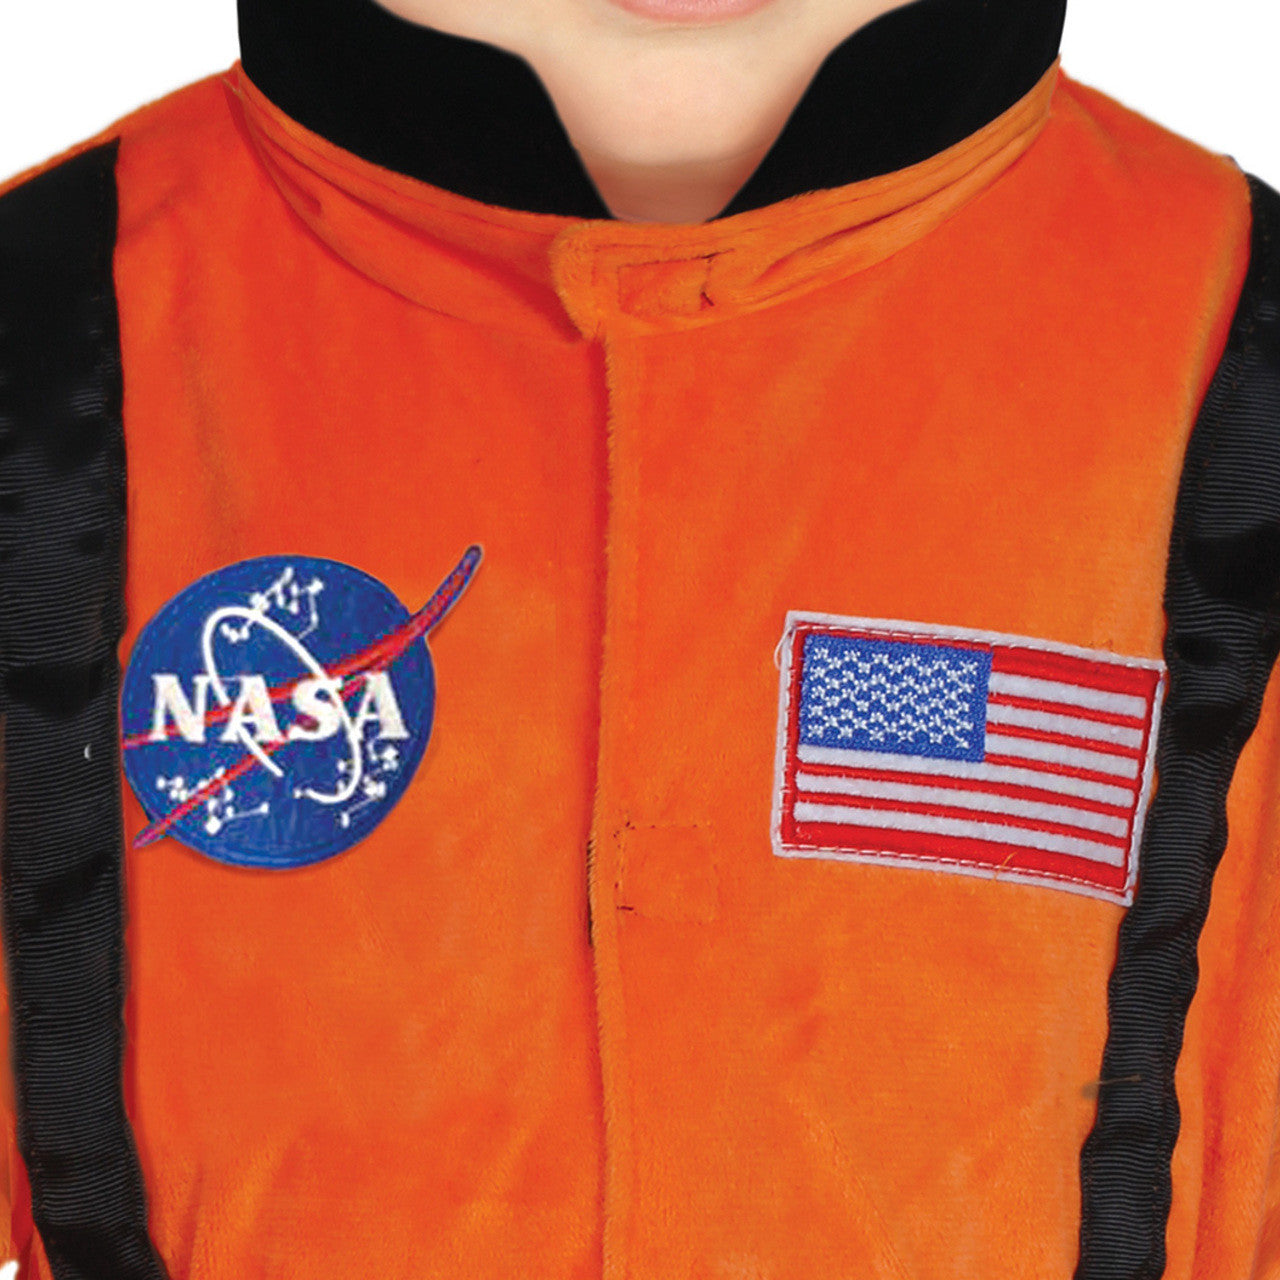 Disfraz de Astronauta Naranja para bebé